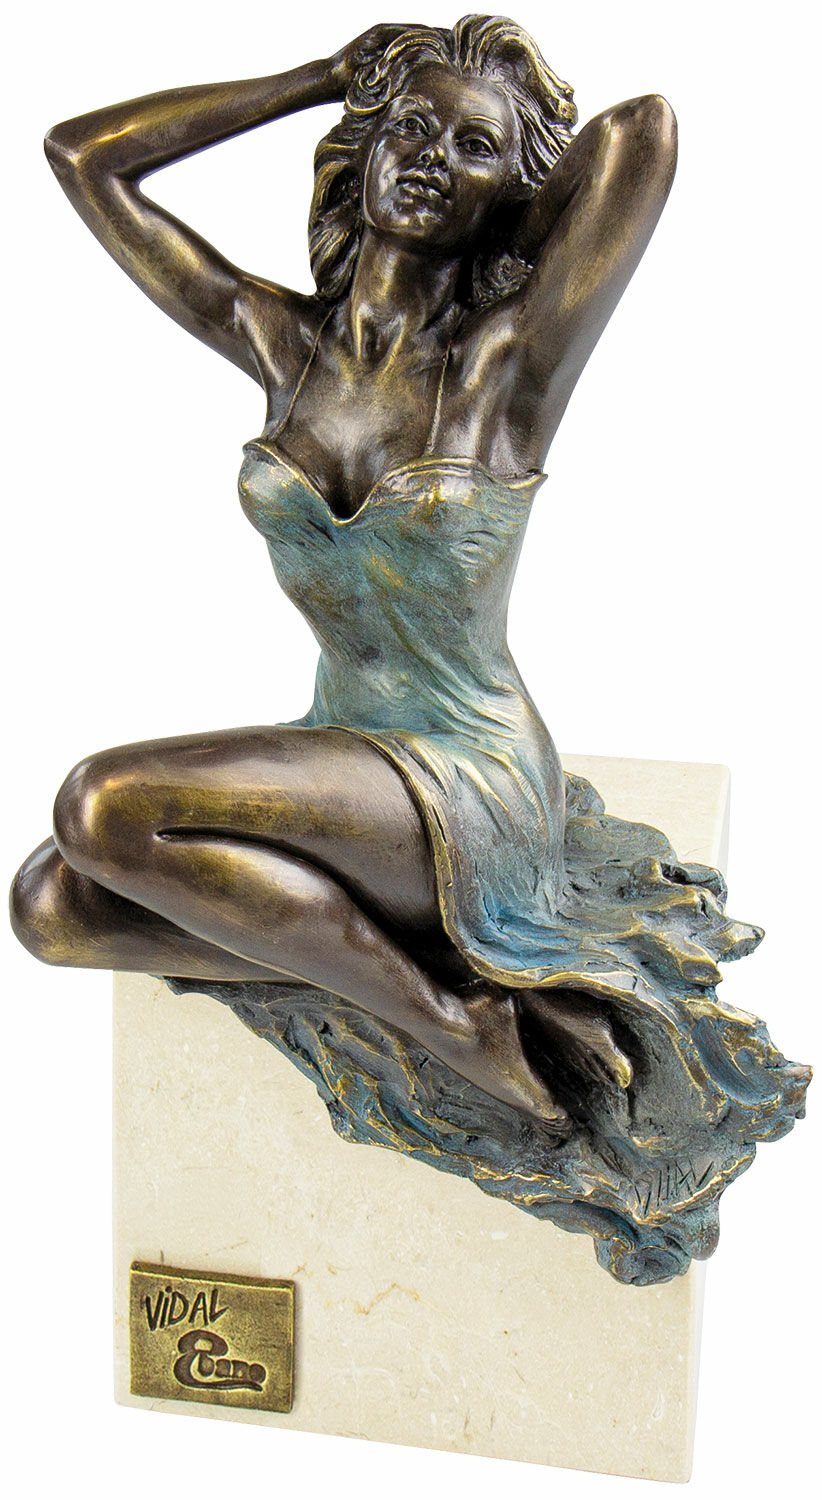 Sculpture "Good Morning", bonded bronze by Manel Vidal